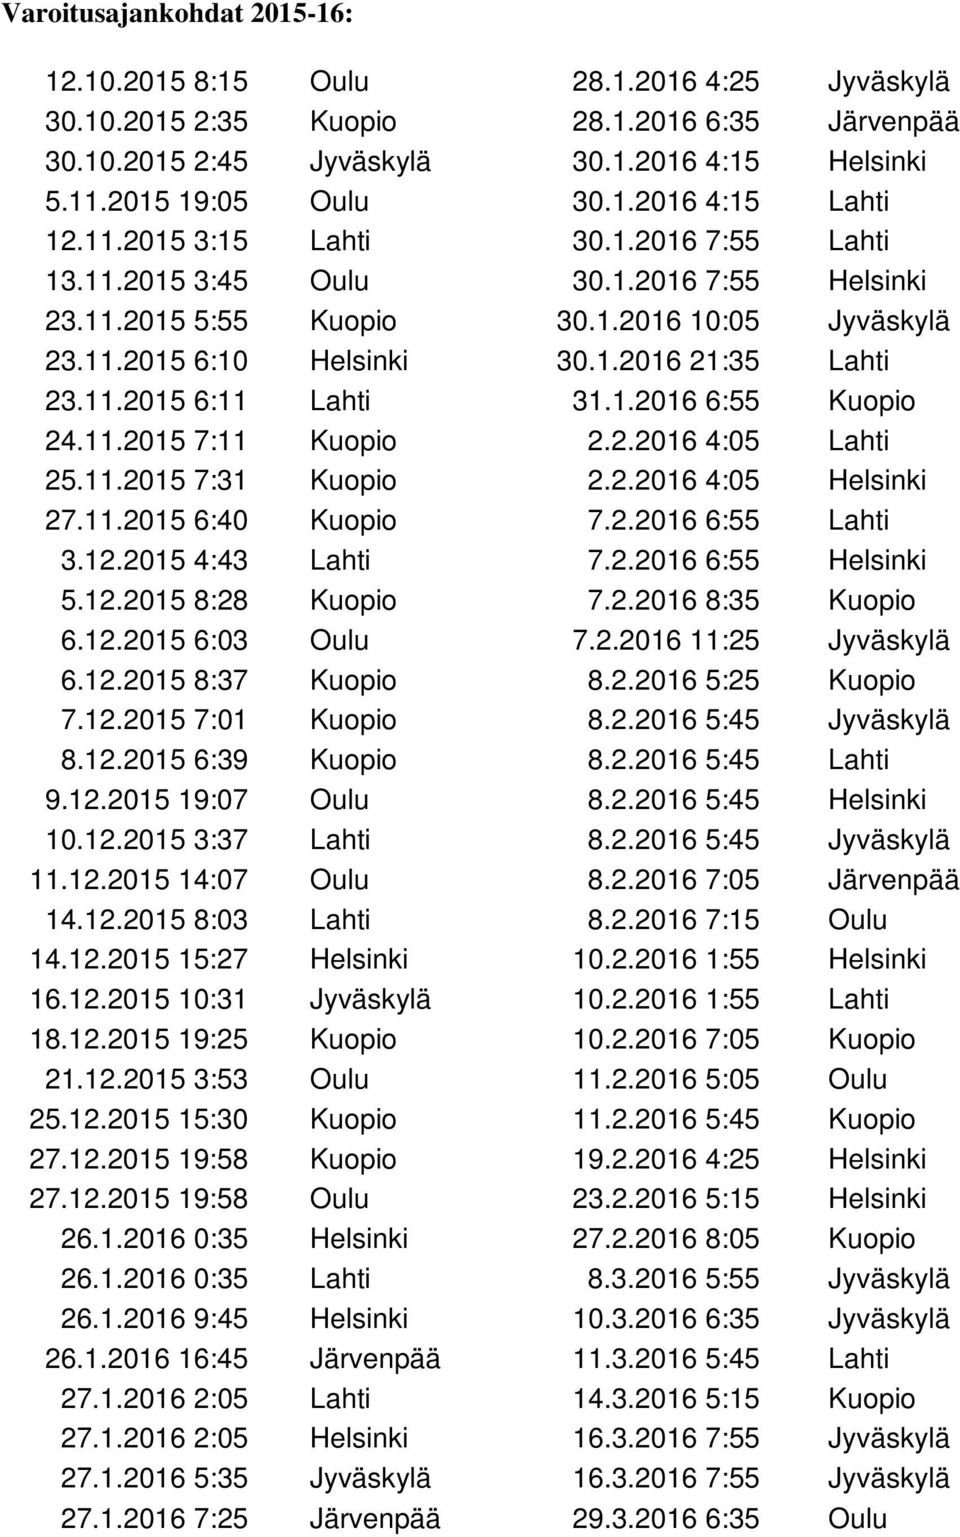 1.2016 6:55 Kuopio 24.11.2015 7:11 Kuopio 2.2.2016 4:05 Lahti 25.11.2015 7:31 Kuopio 2.2.2016 4:05 Helsinki 27.11.2015 6:40 Kuopio 7.2.2016 6:55 Lahti 3.12.2015 4:43 Lahti 7.2.2016 6:55 Helsinki 5.12.2015 8:28 Kuopio 7.